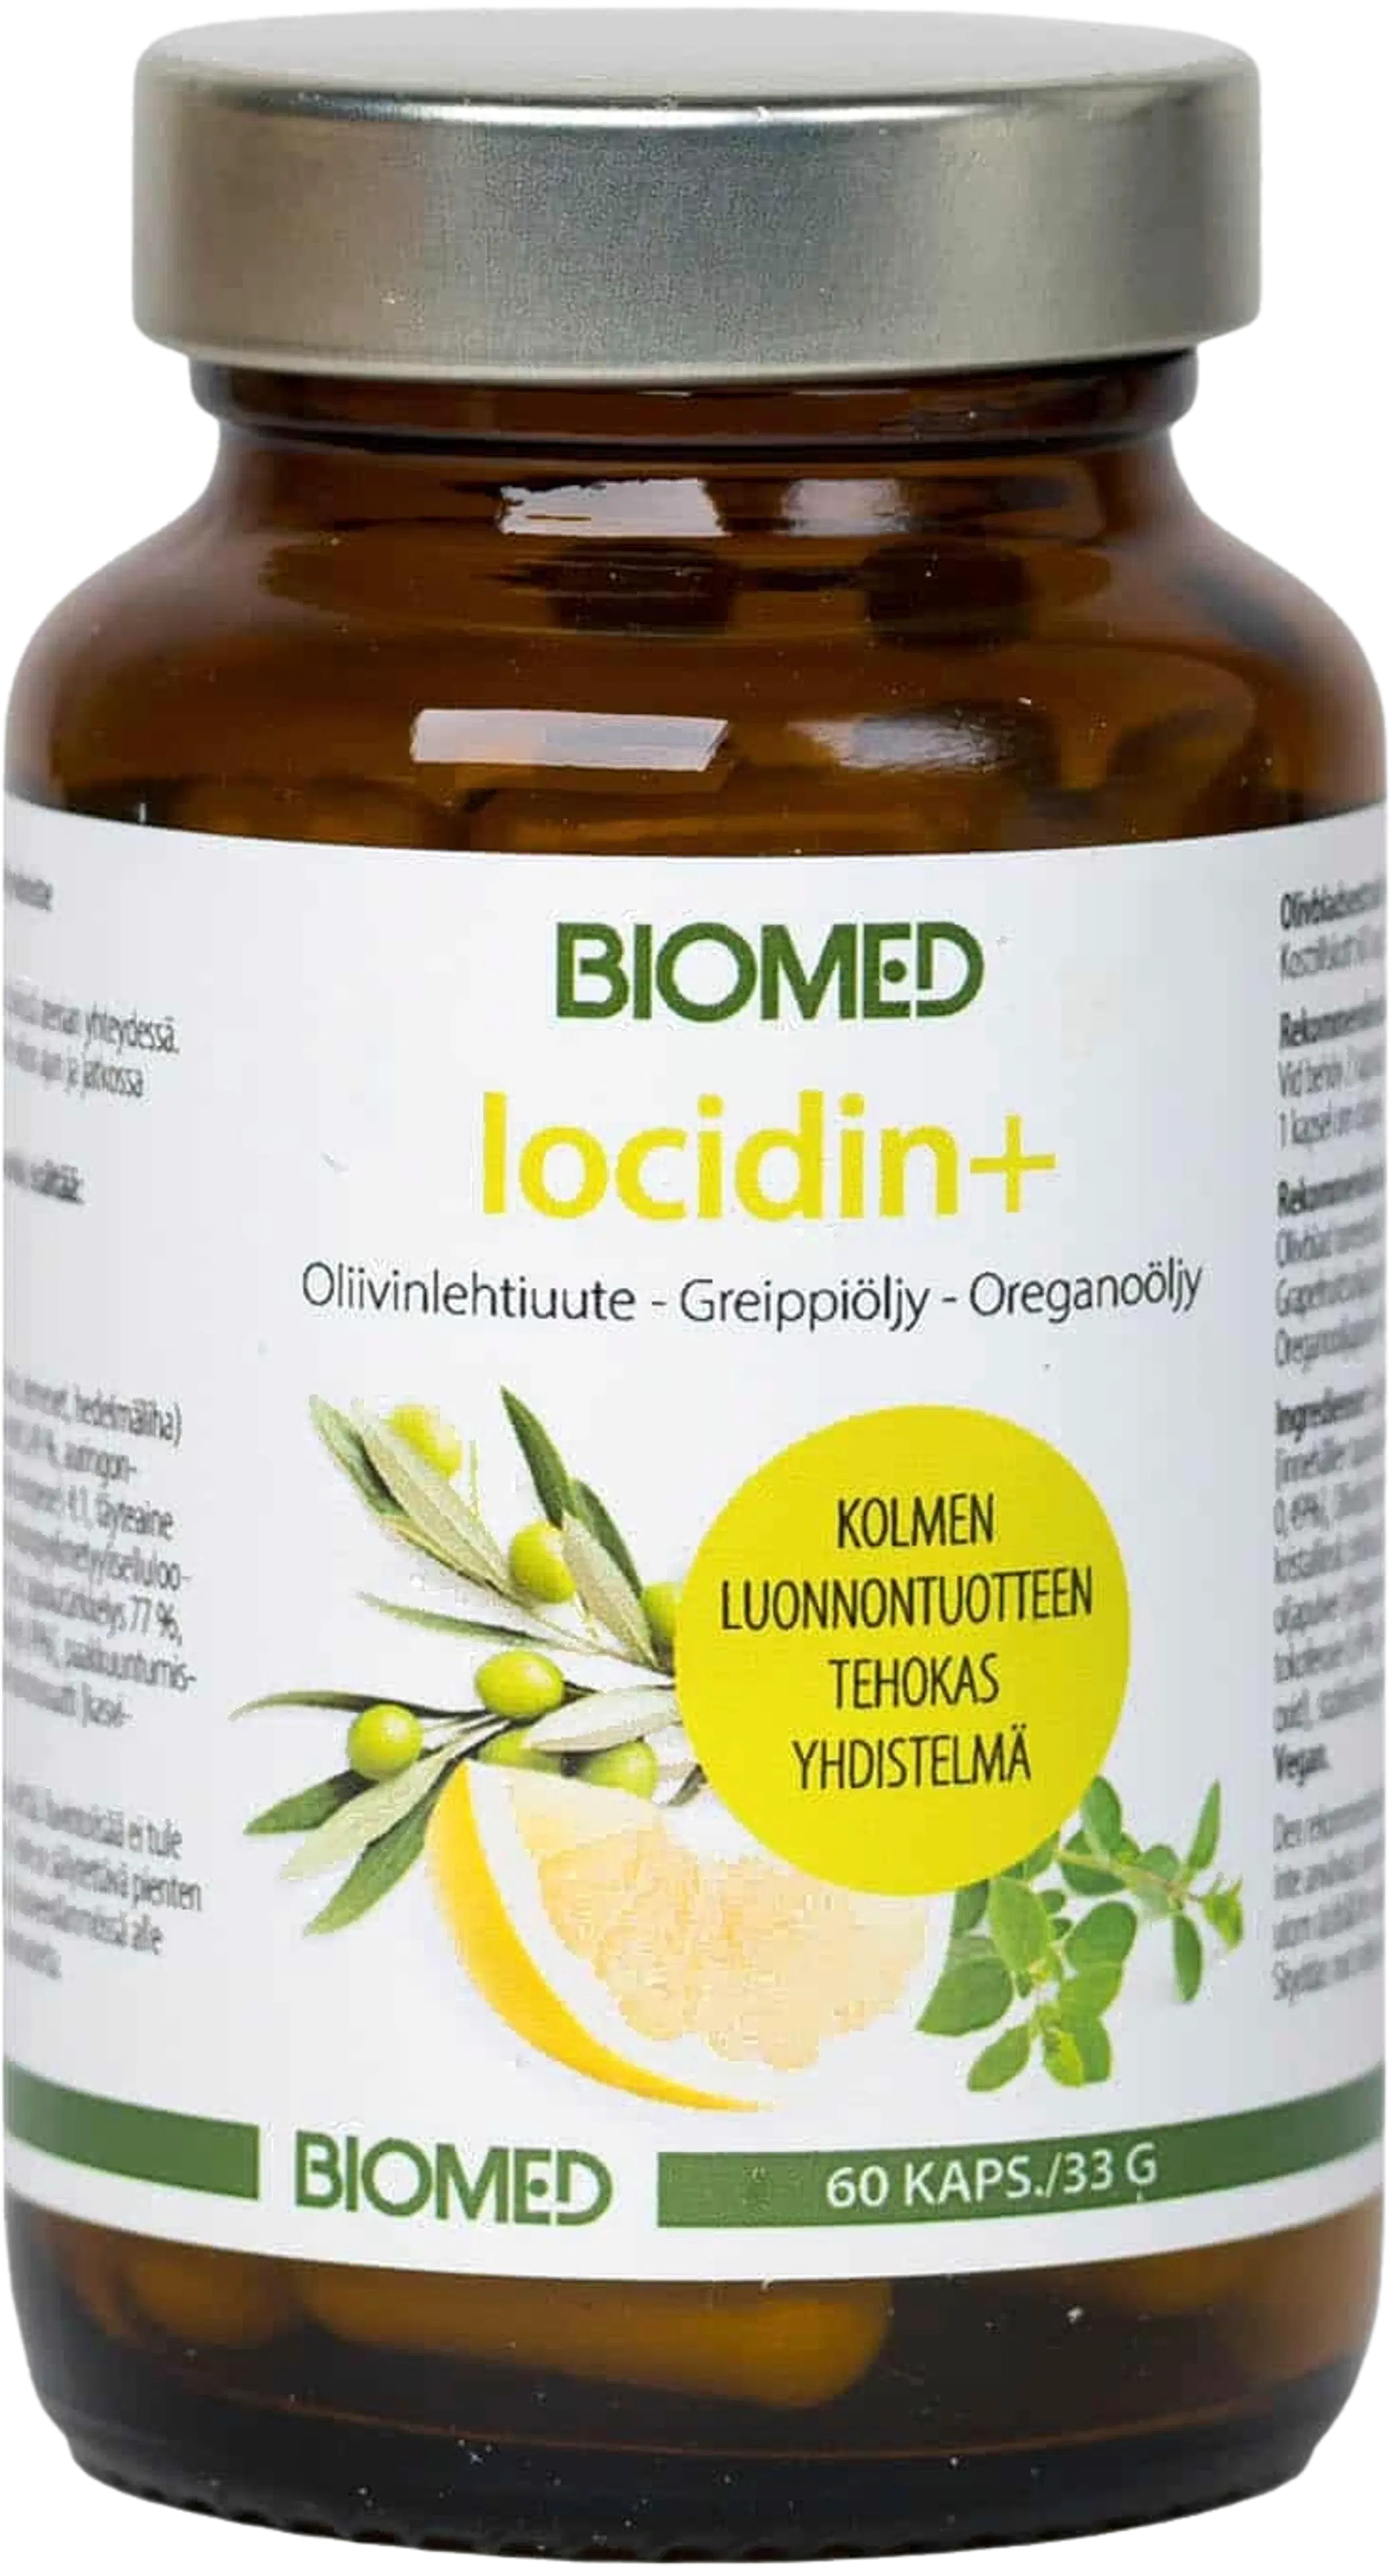 Biomed Iocidin+ Oliivinlehtiuute-Greippiöljy-Oreganoöljy 60 kaps.